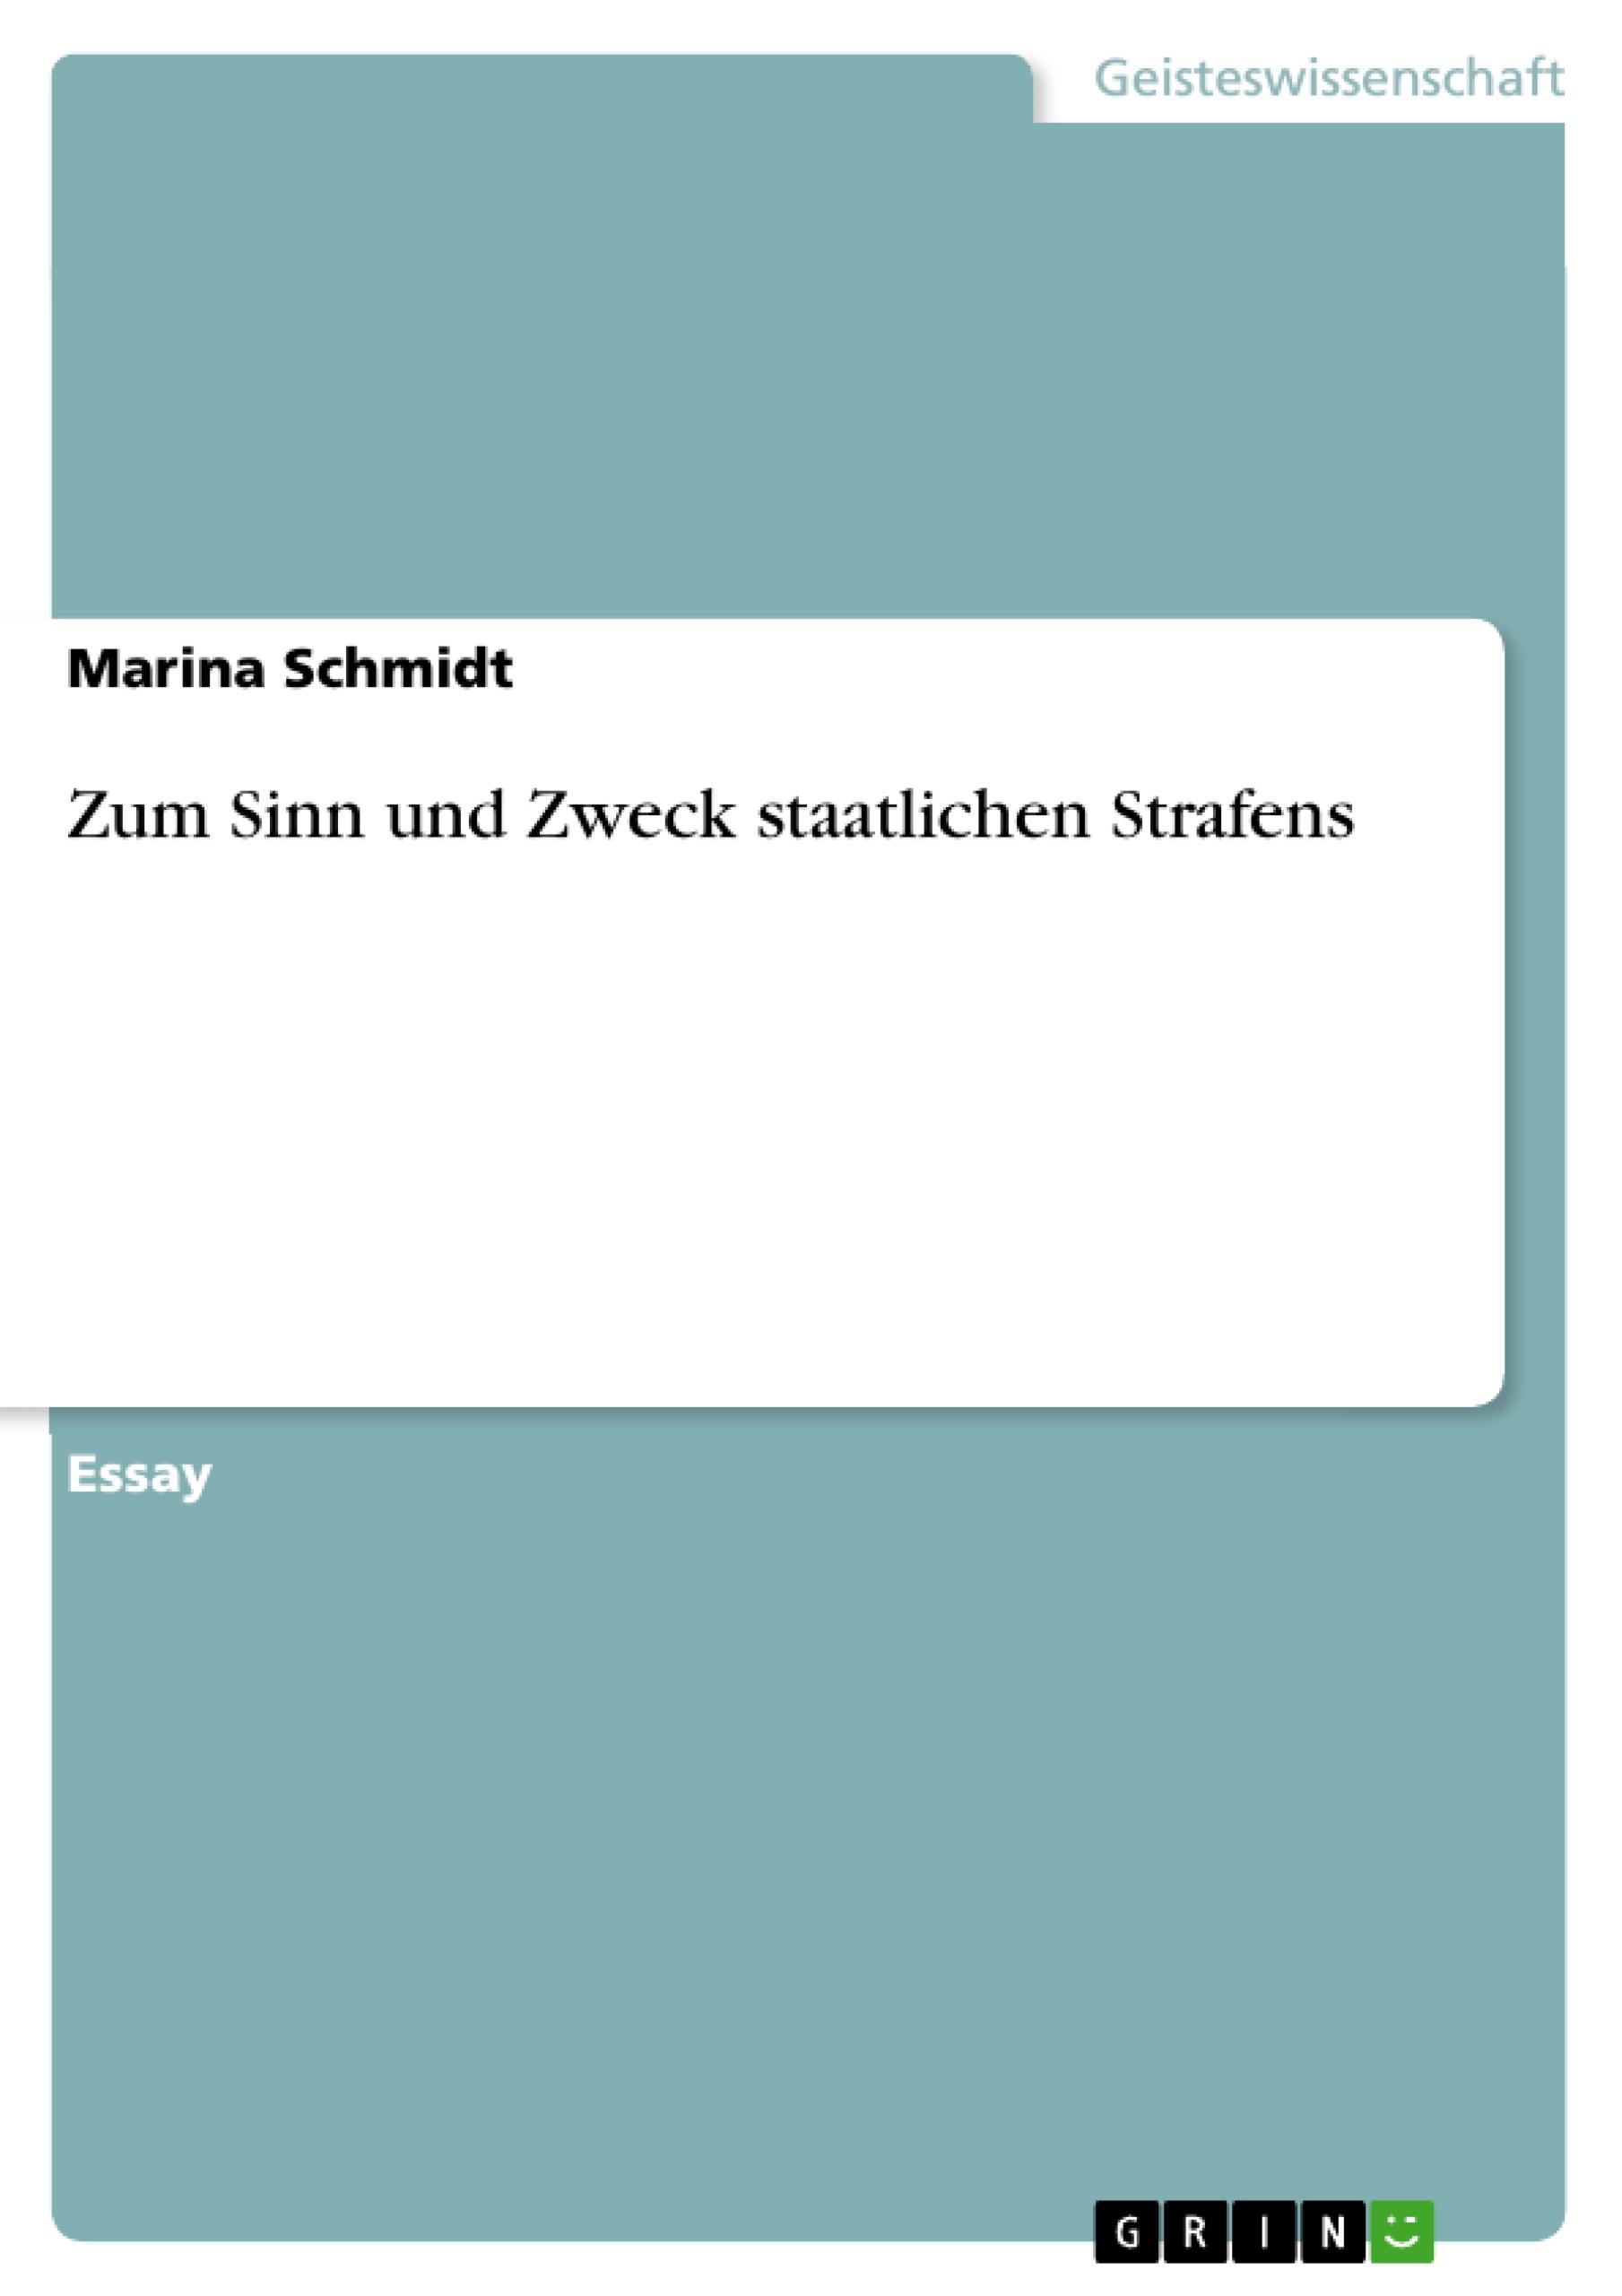 Zum Sinn und Zweck staatlichen Strafens / Marina Schmidt / Taschenbuch / Booklet / 16 S. / Deutsch / 2010 / GRIN Verlag / EAN 9783640660865 - Schmidt, Marina